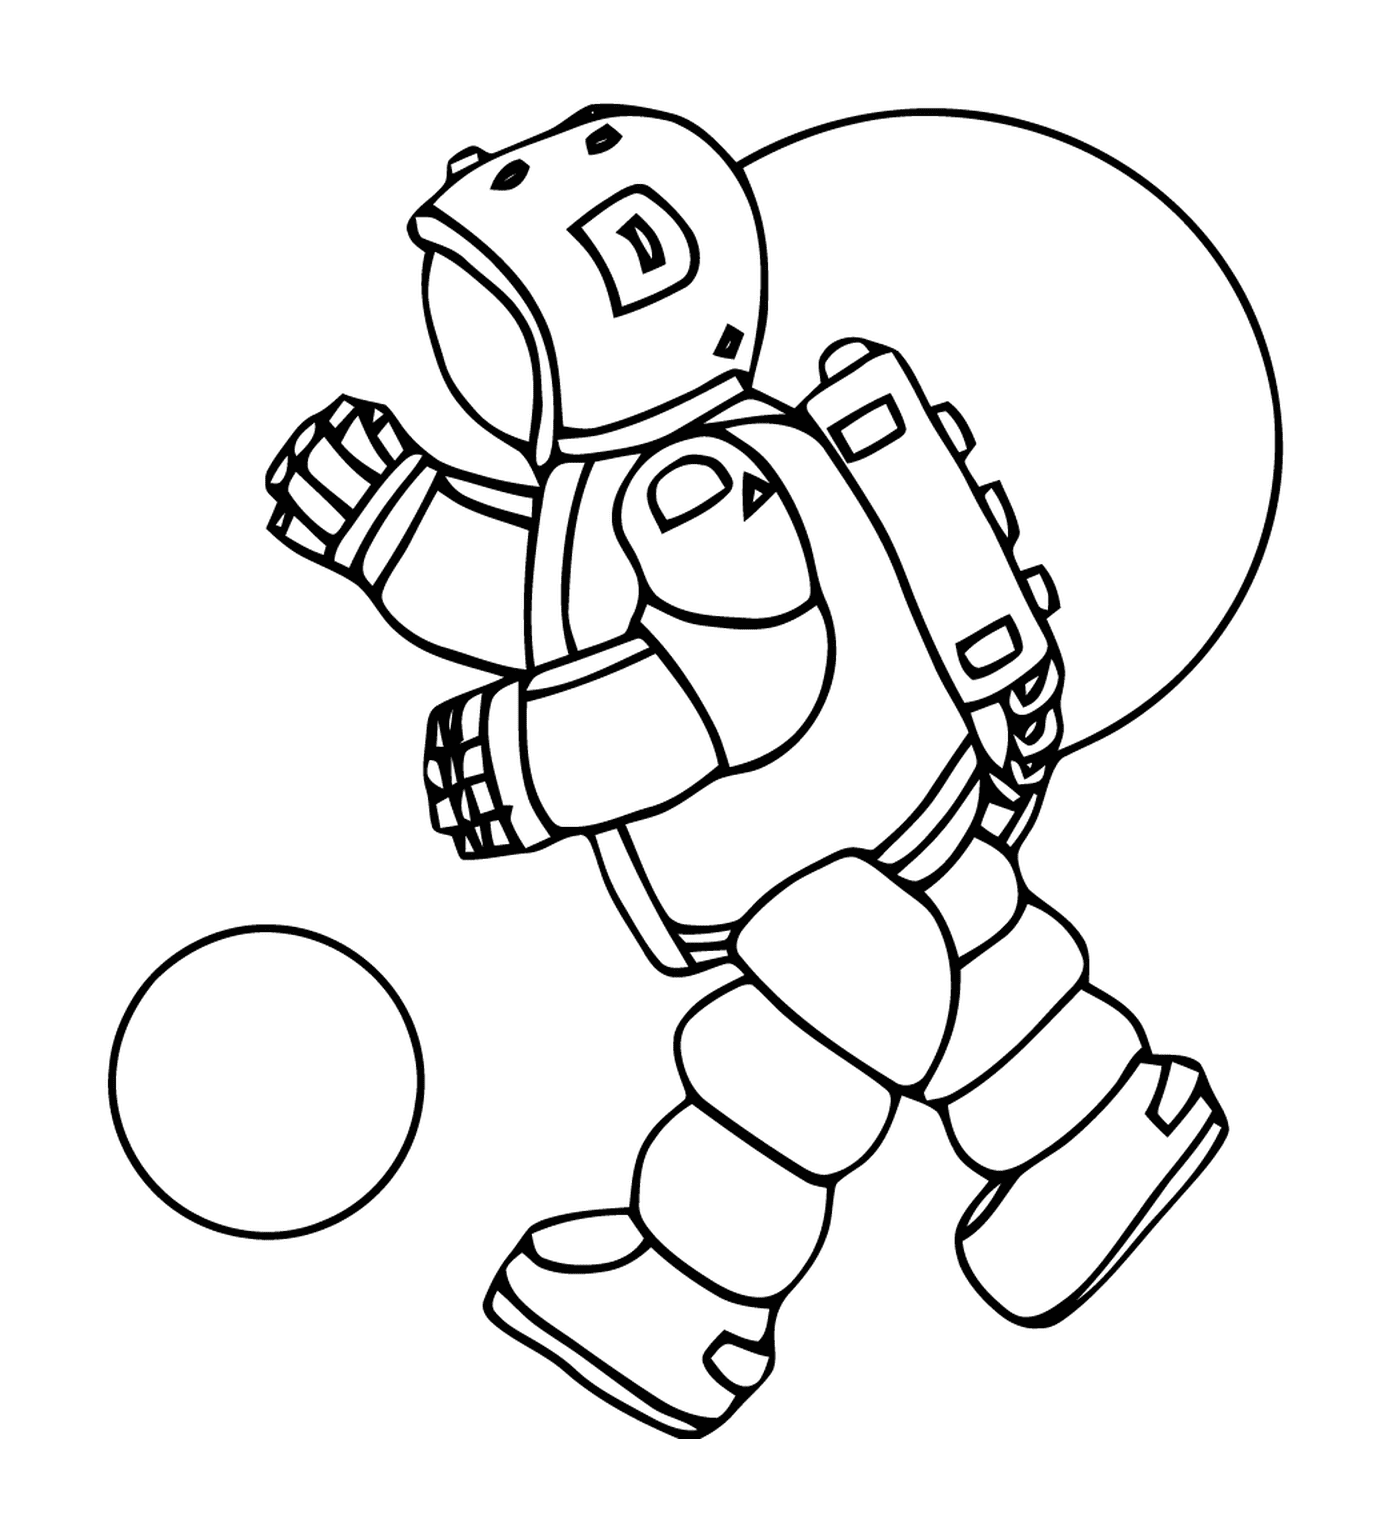  Astronaut spielen mit einem Ball 